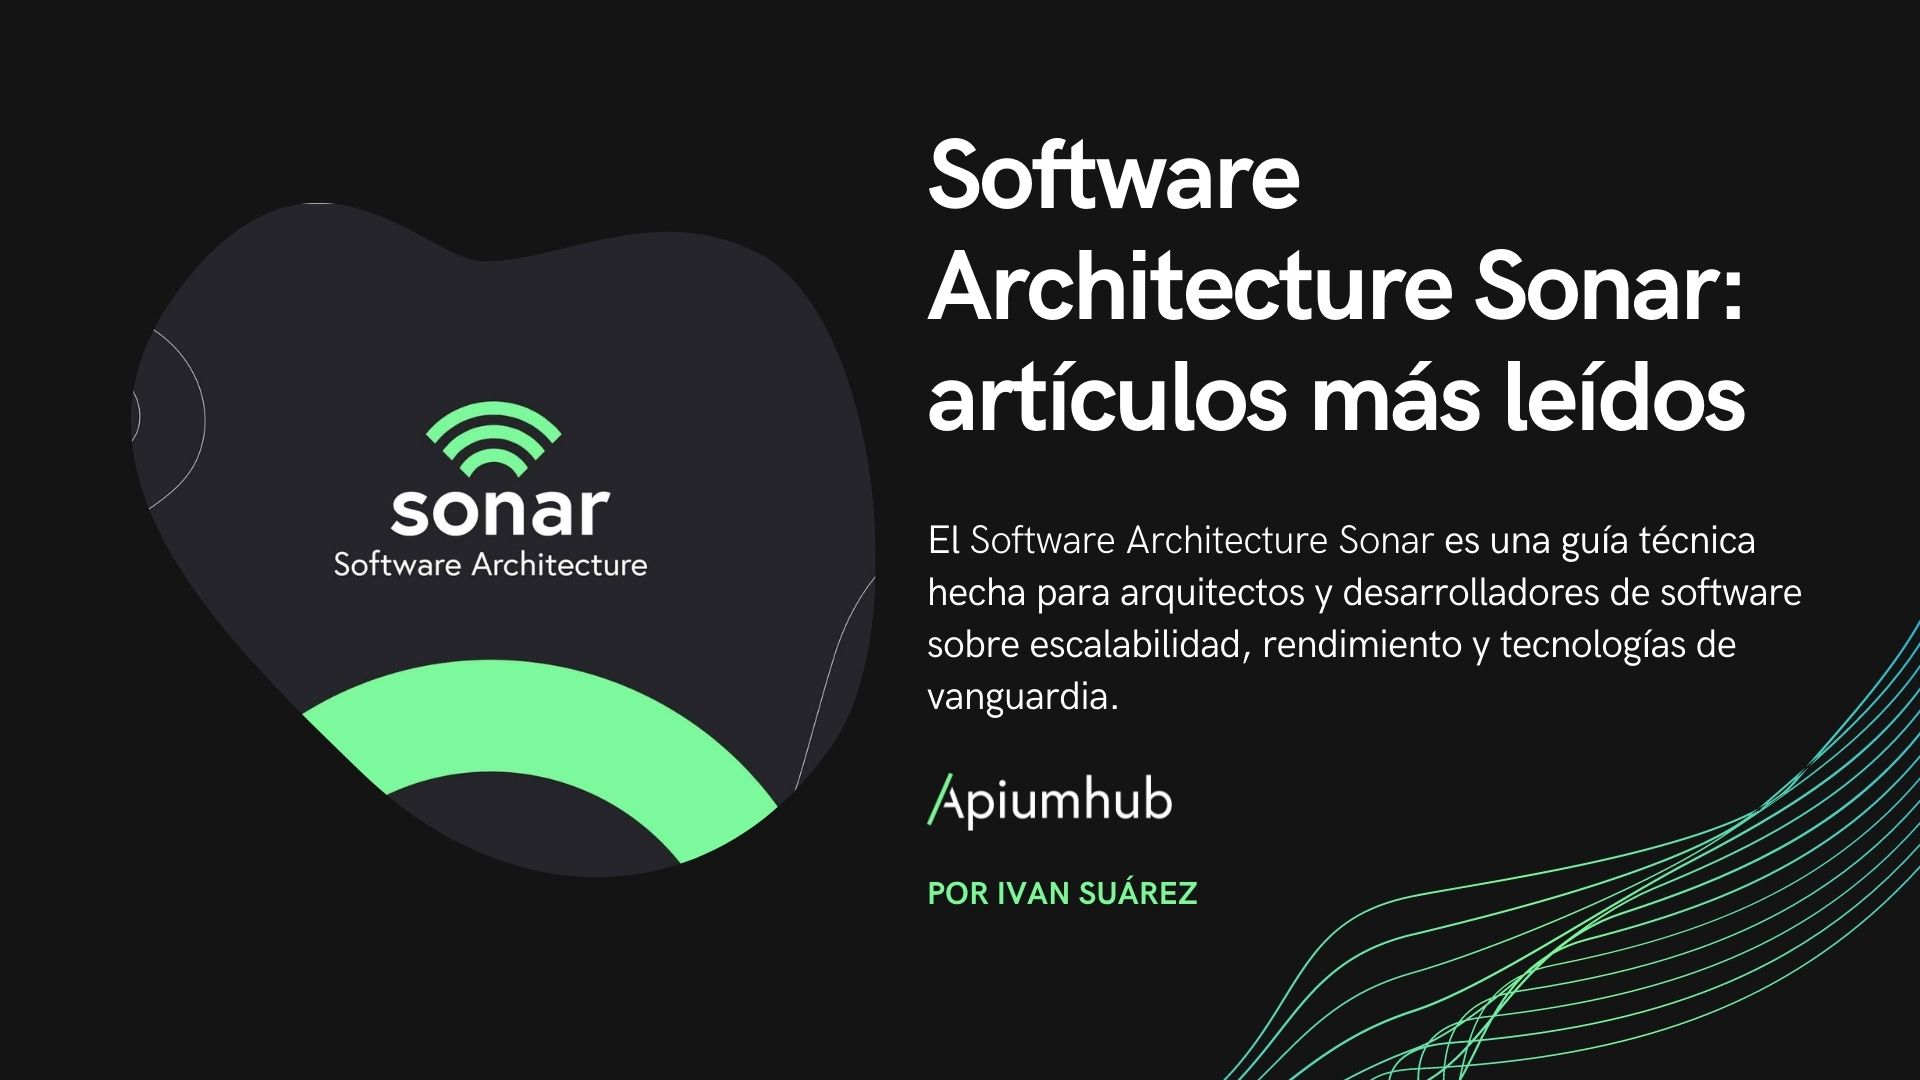 Software Architecture Sonar: artículos más leídos